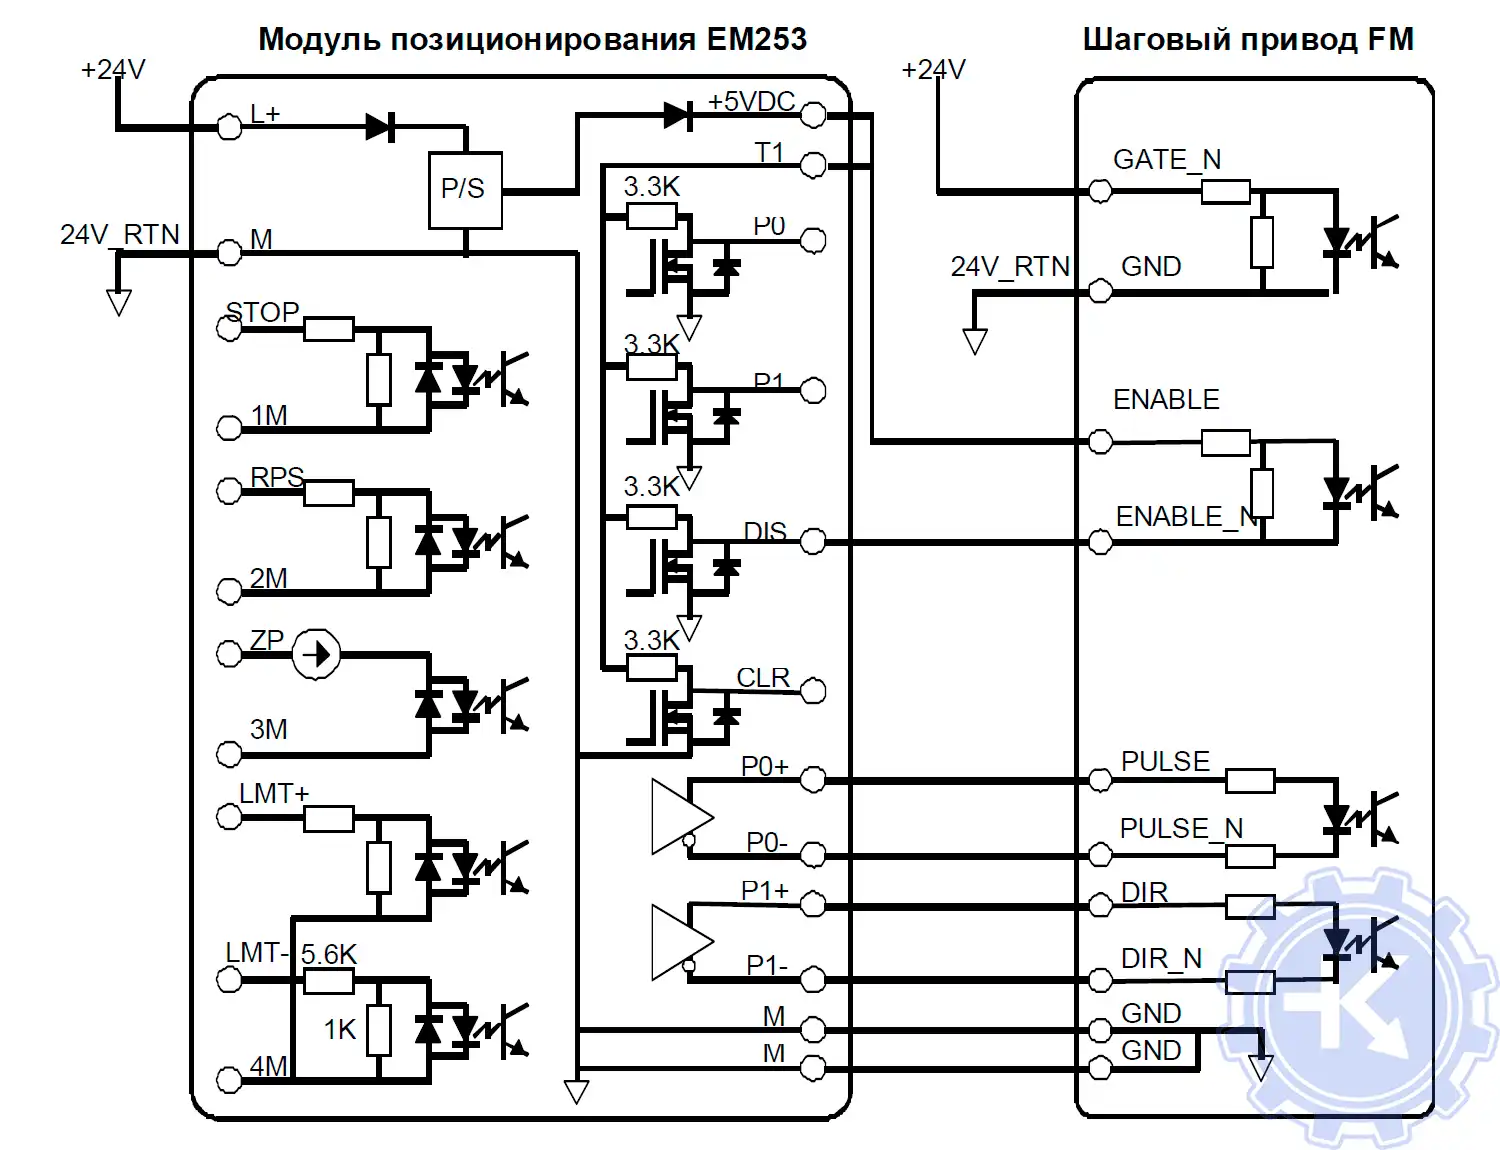 Схема подключения модуля позиционирования EM 253 к шаговому приводу SIMATIC FM